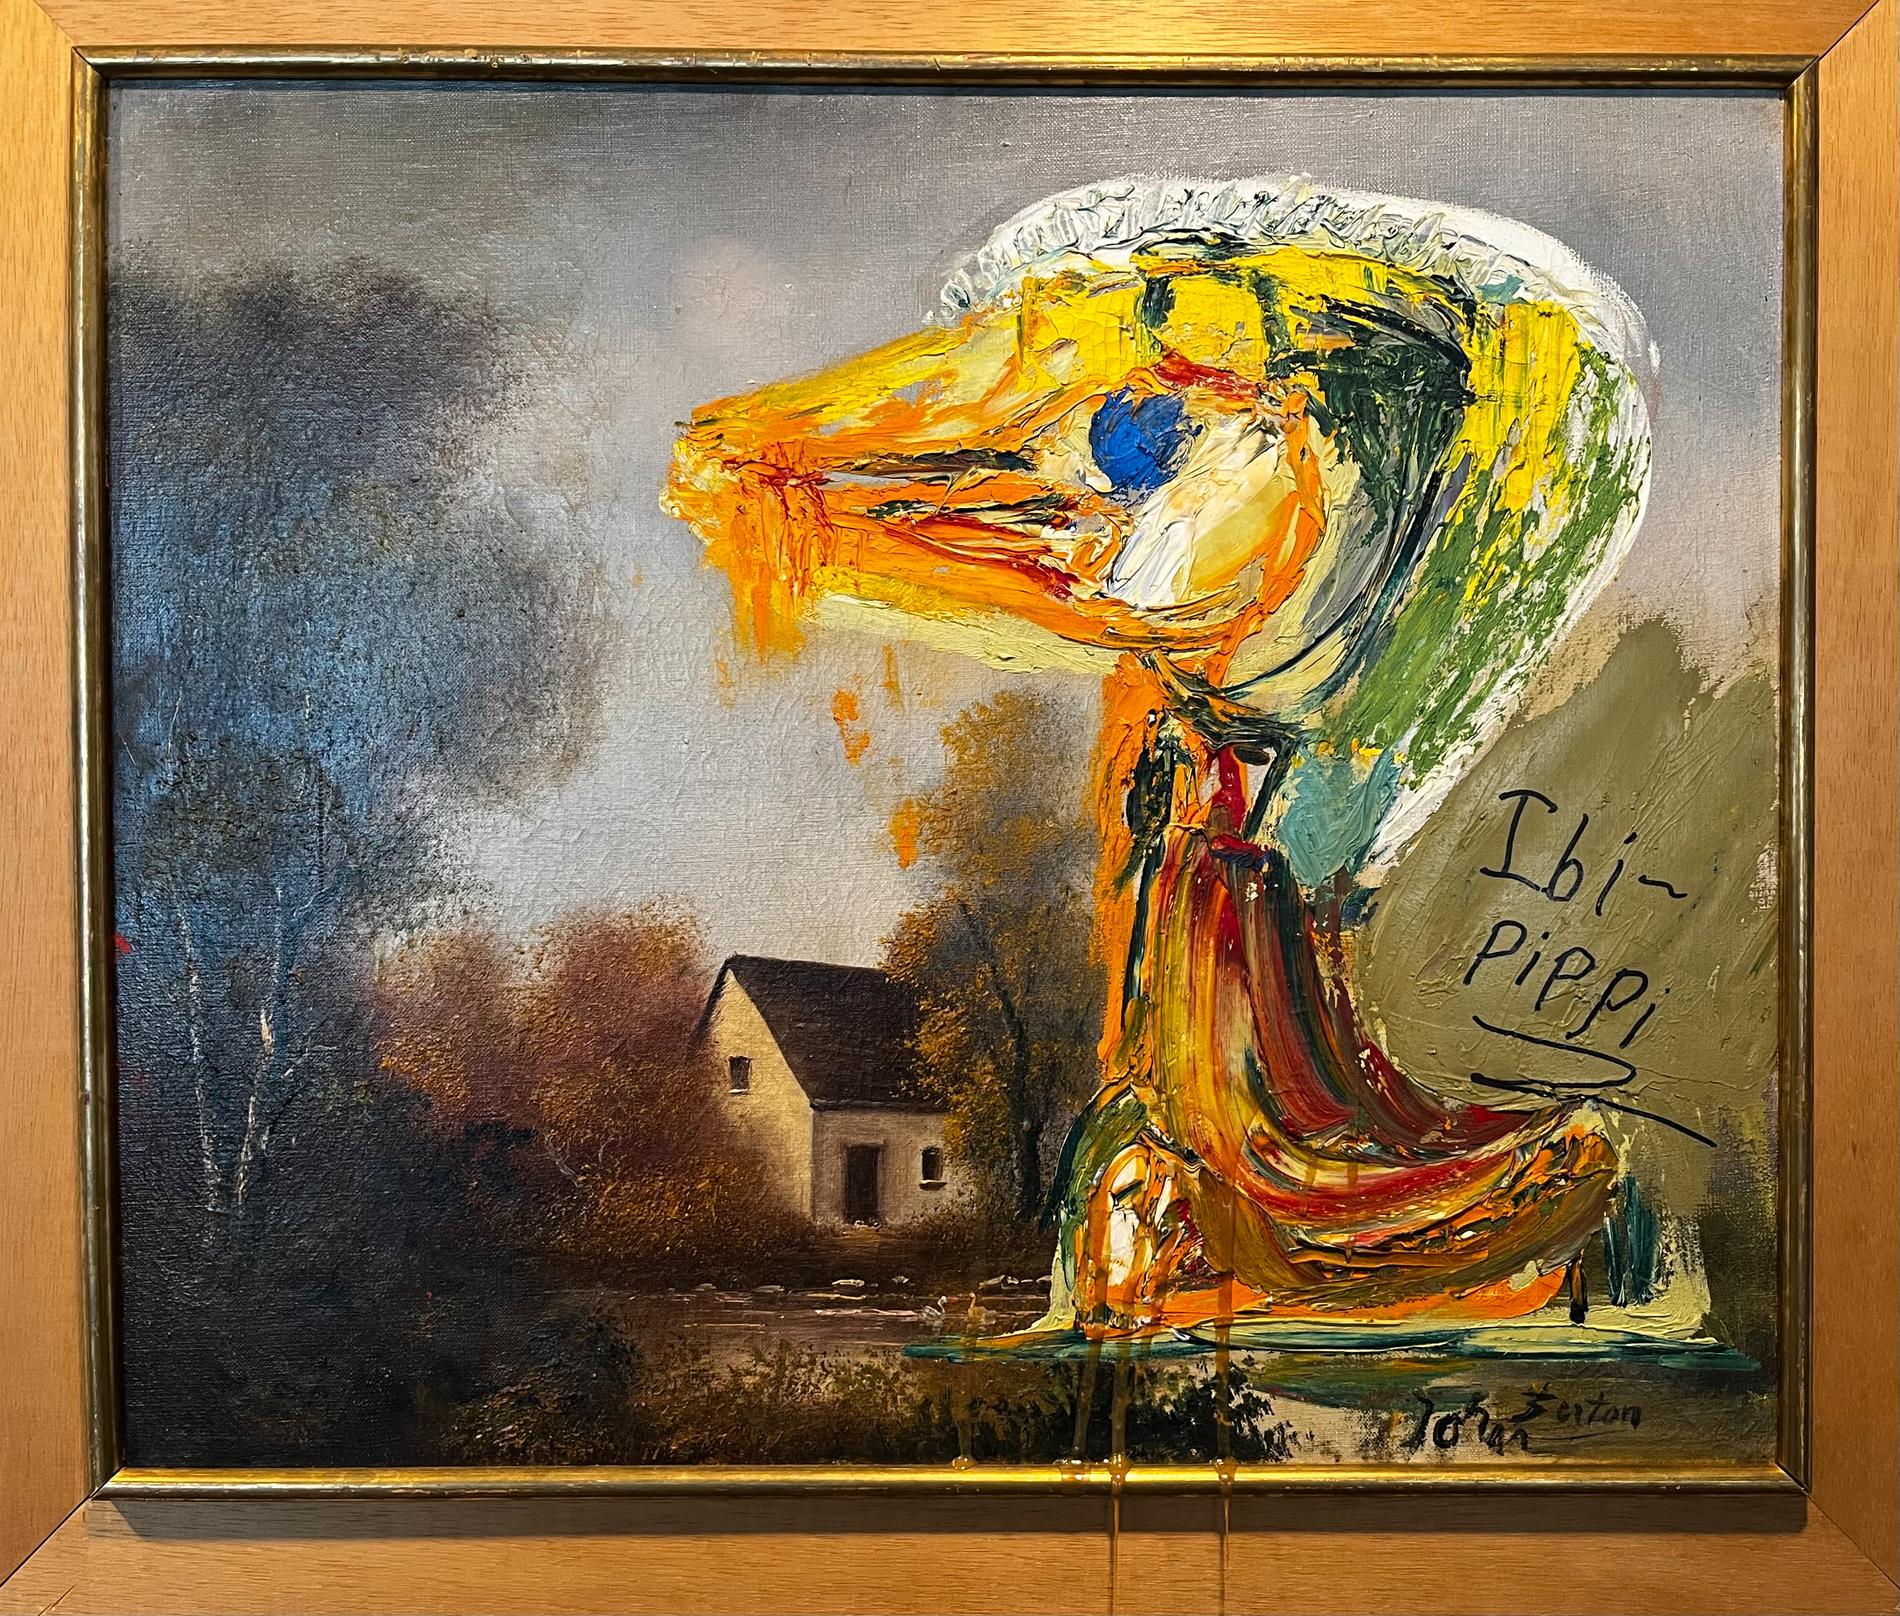 Konstnären Ibi-Pippi Orup Hedegaard har vandaliserat Asger Jorns berömda målning "Den störande ankungen". Arkivbild.